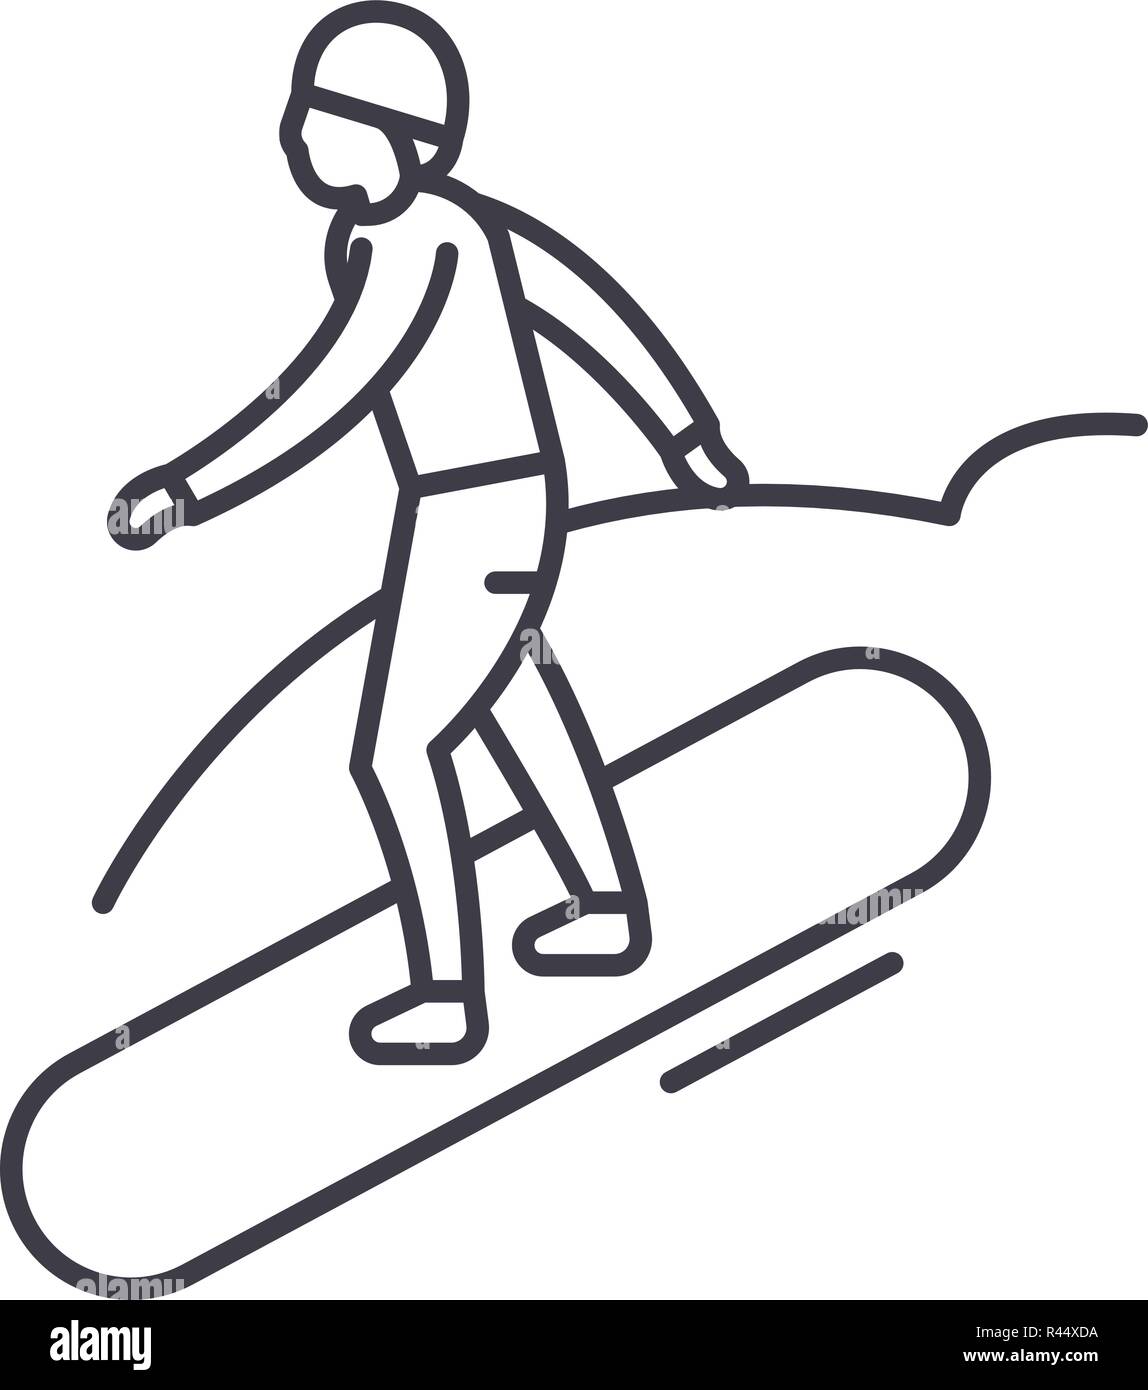 Snowboard line icon concept